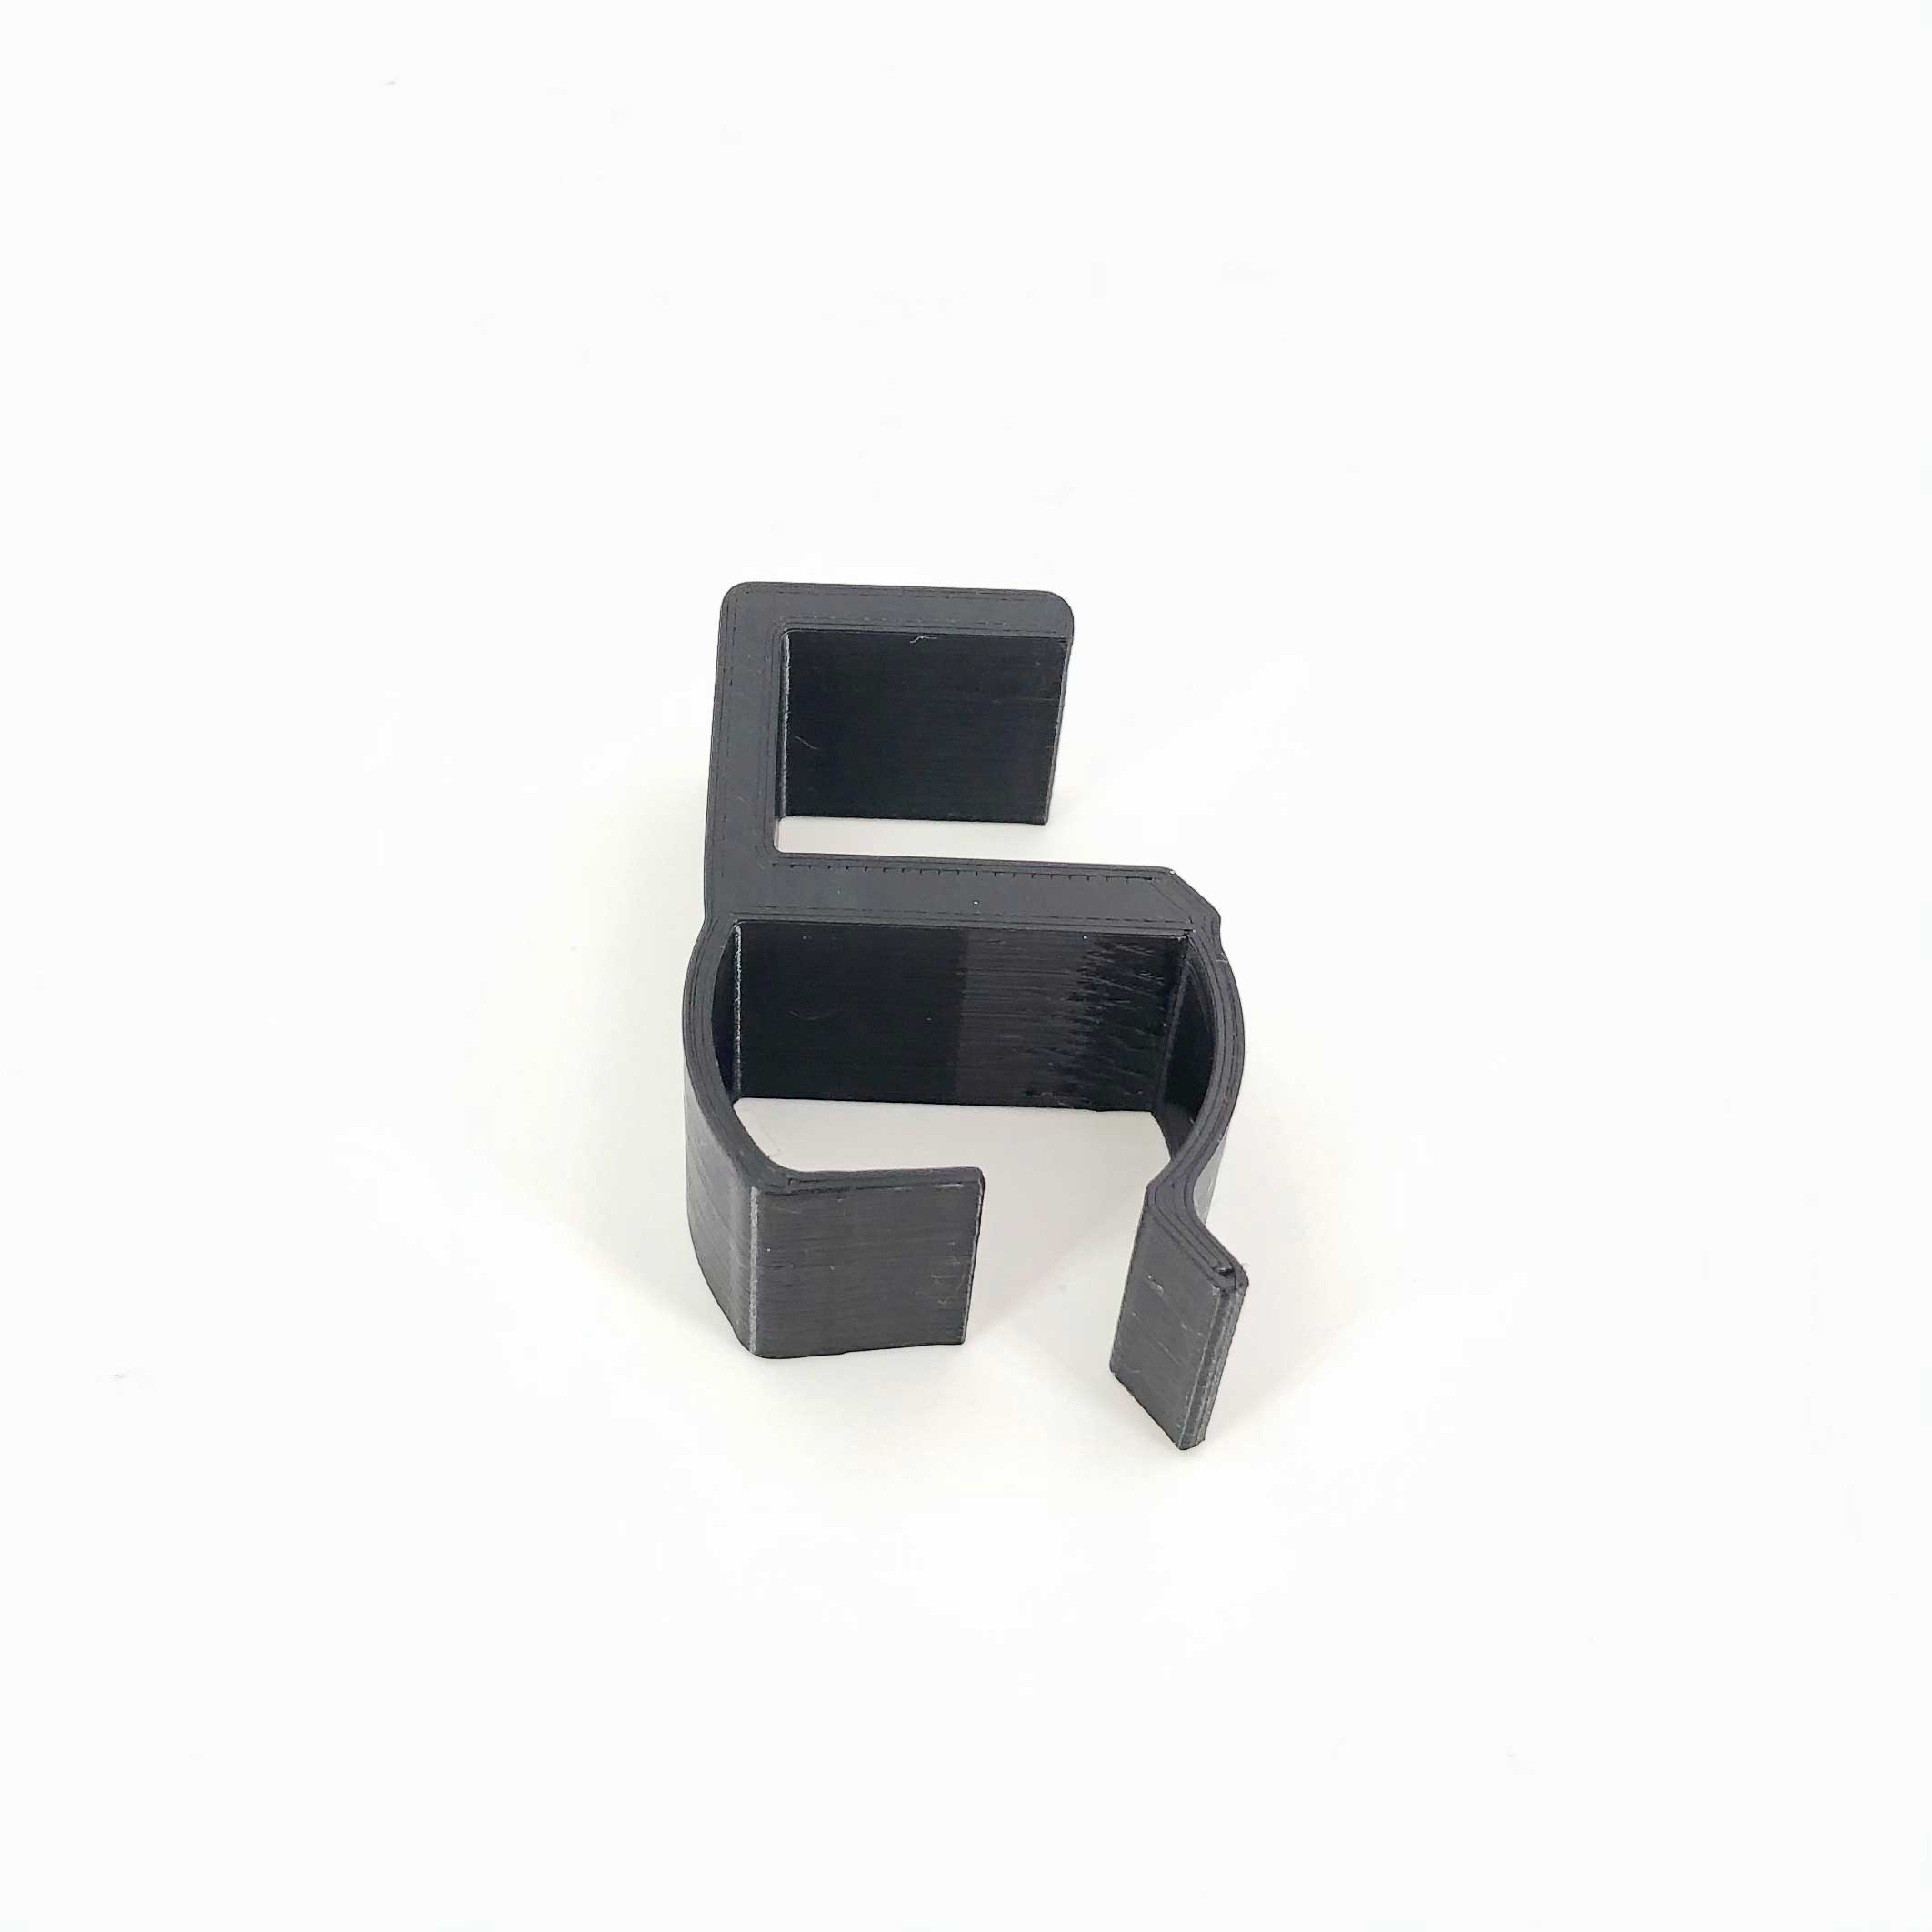 3D-utskriven kabelorganisator monterad på ett skrivbord tillverkad av PETG-filament i svart av en 3D-utskriftstjänst i Sverige